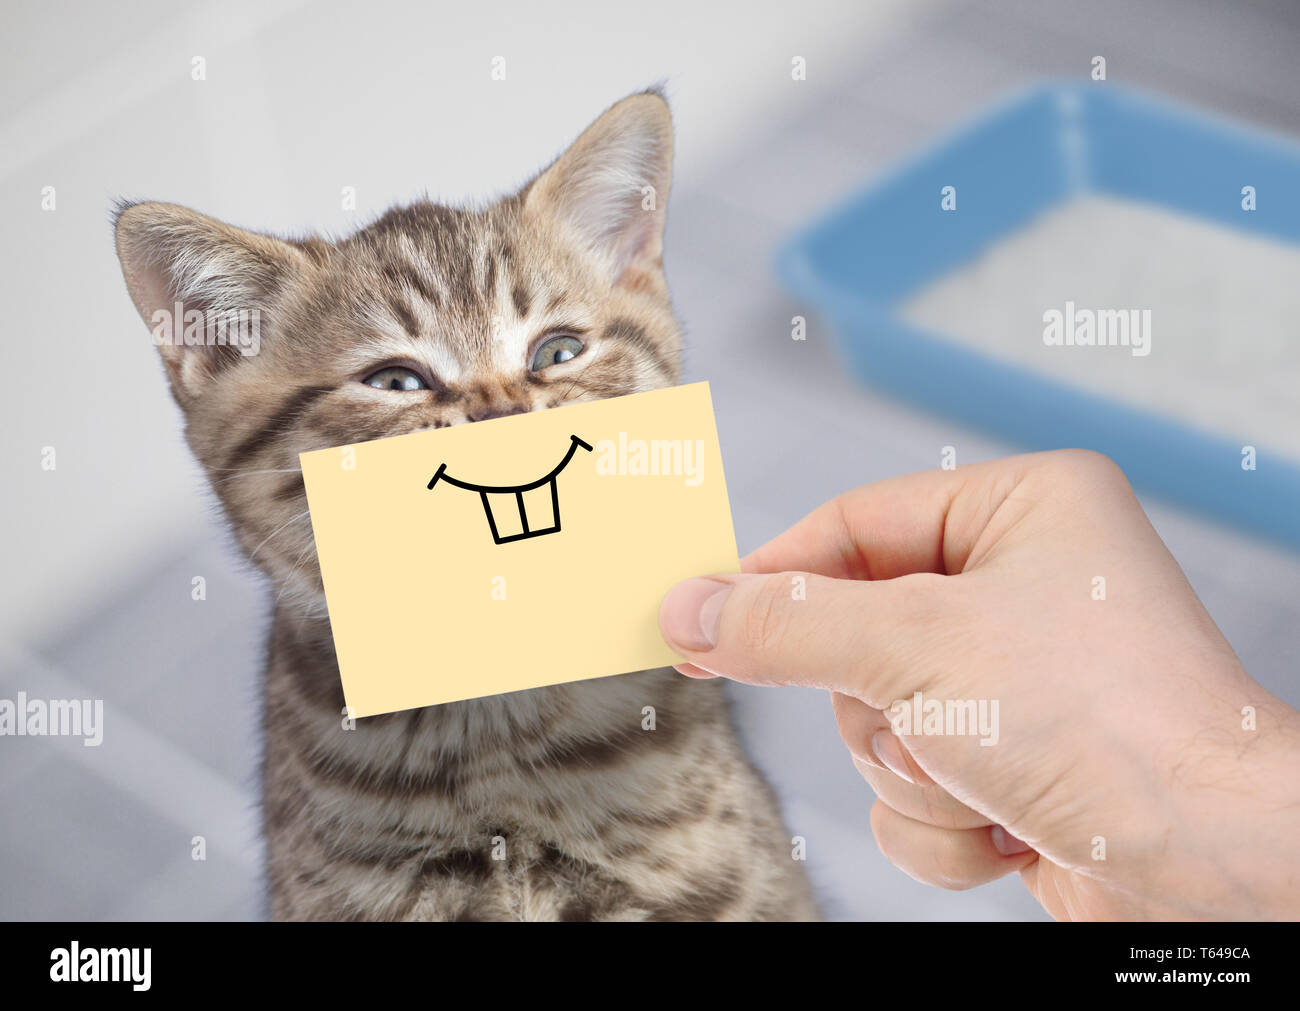 Lustige Katze Mit Lacheln Auf Karton Sitzt In Der Nahe Der Wurfkiste Stockfotografie Alamy